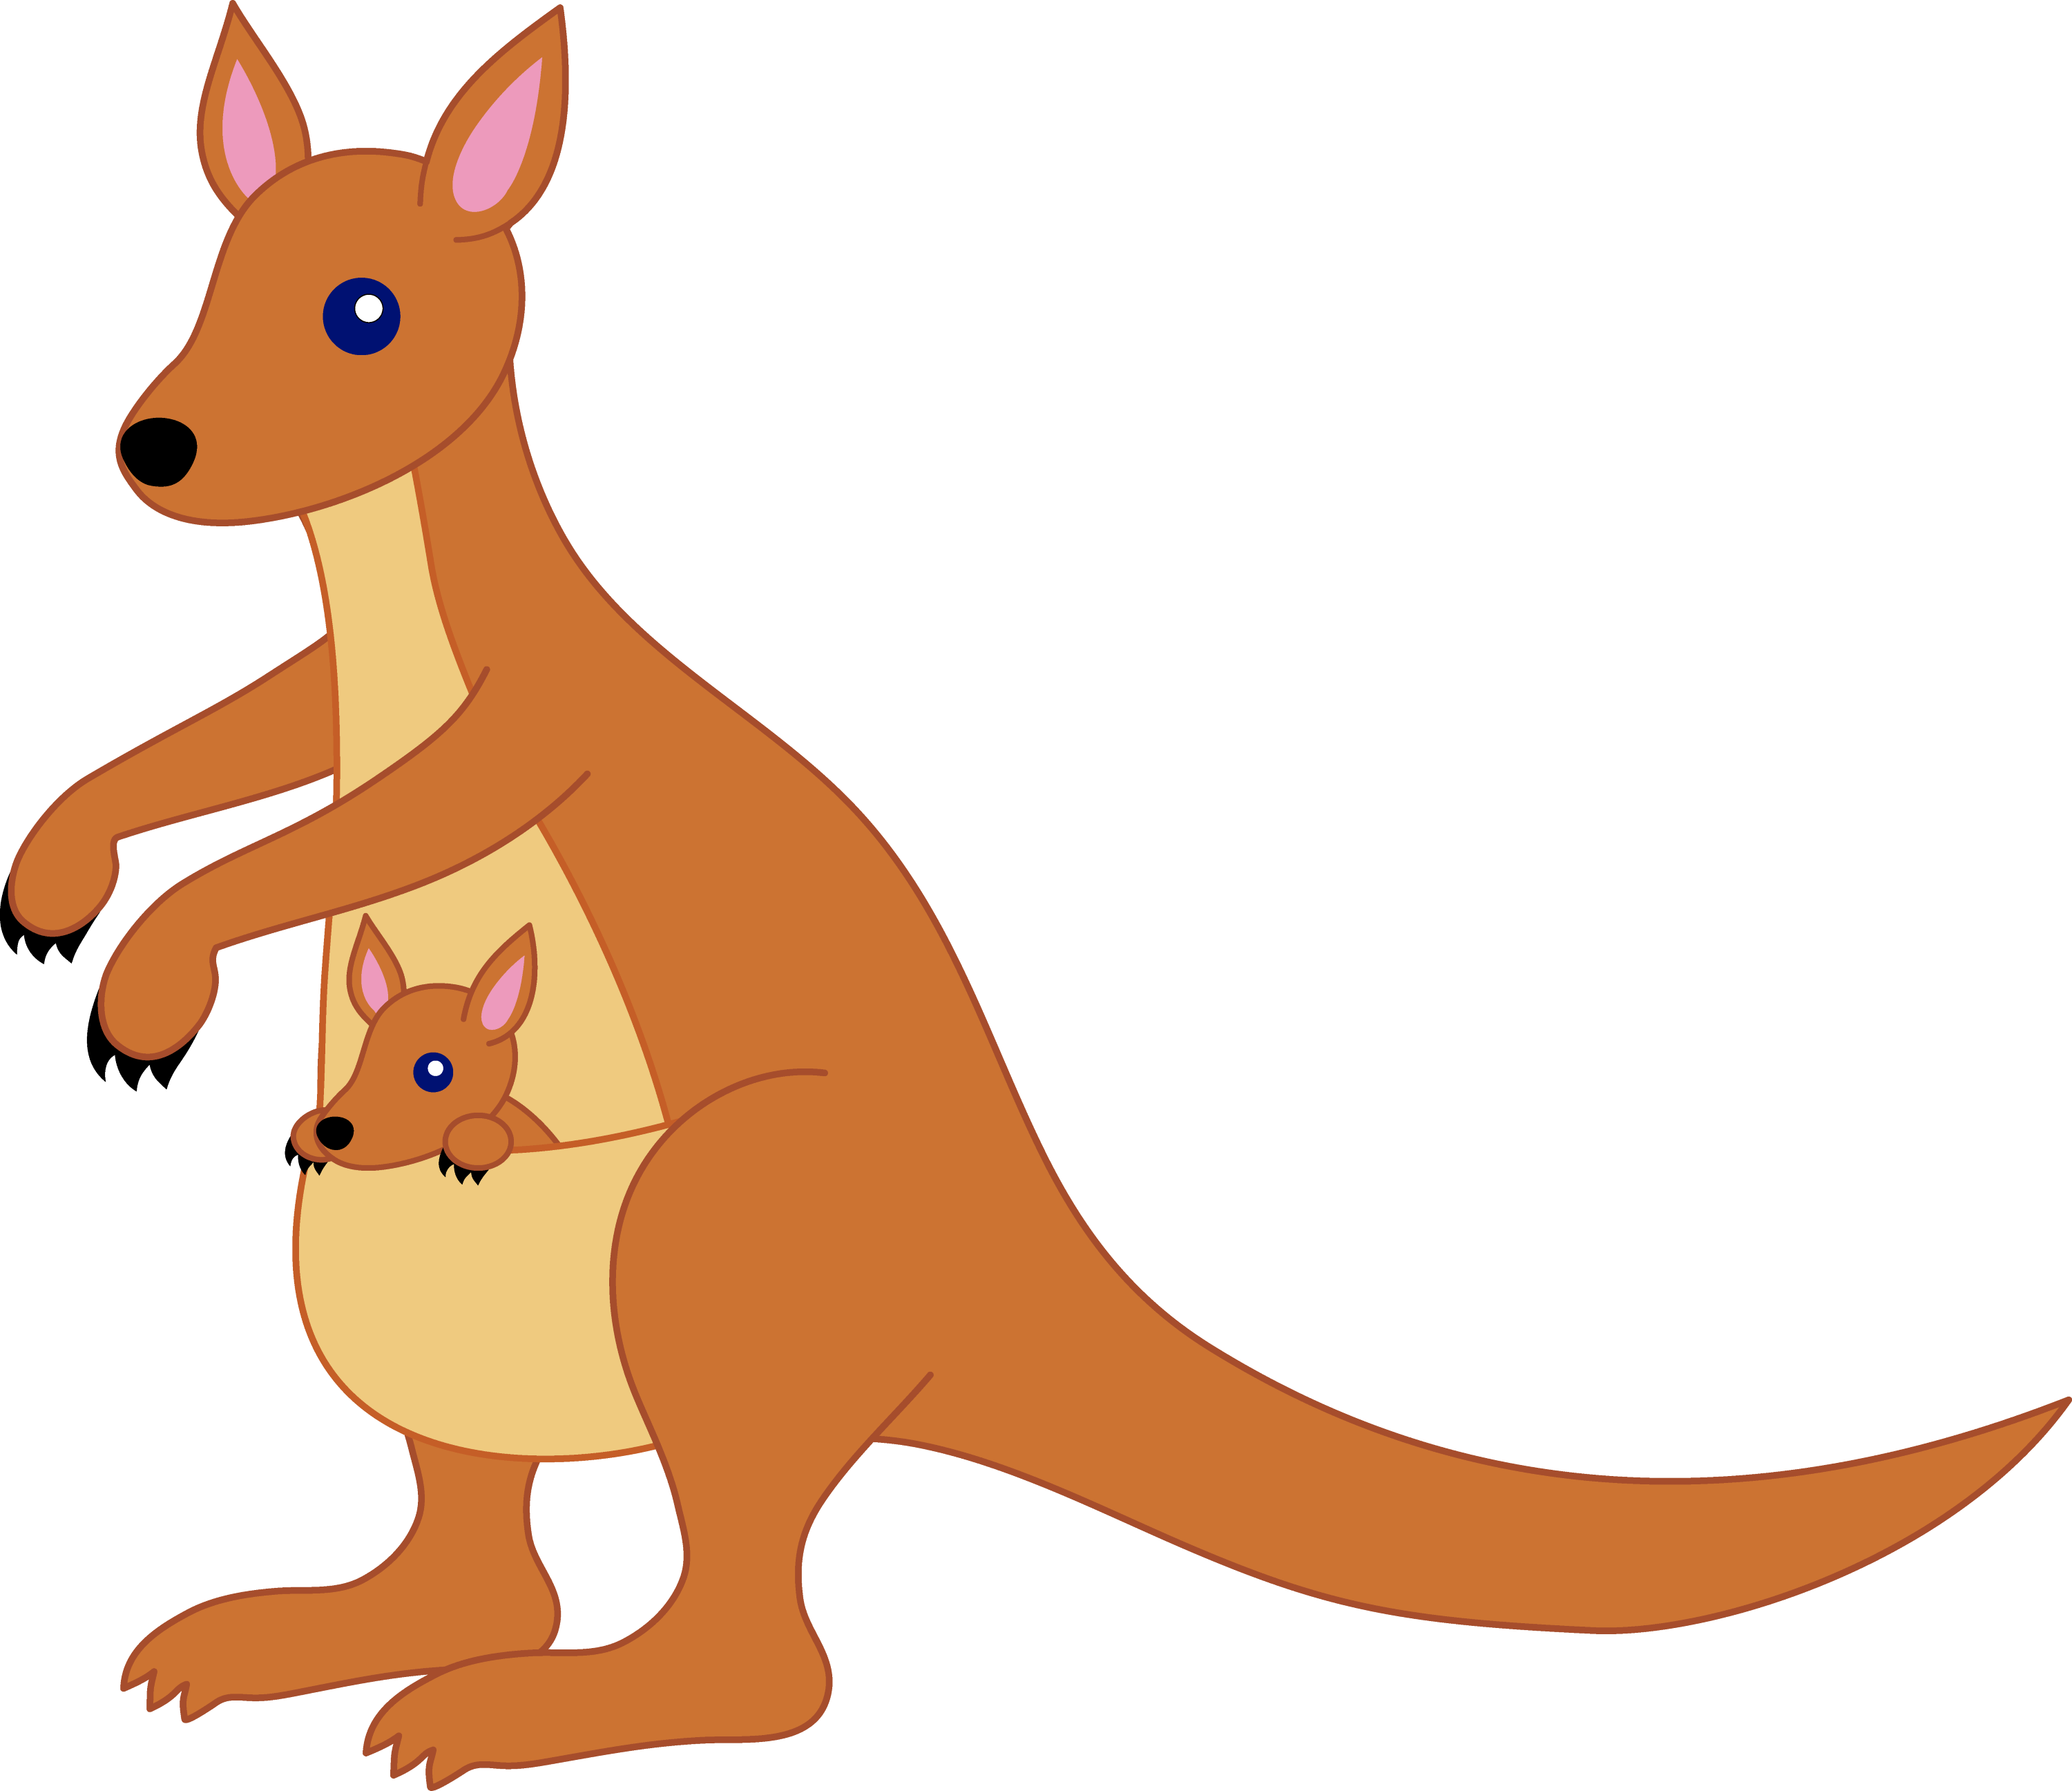 Kangaroo Images Clip Art Stock Photos Dictionary